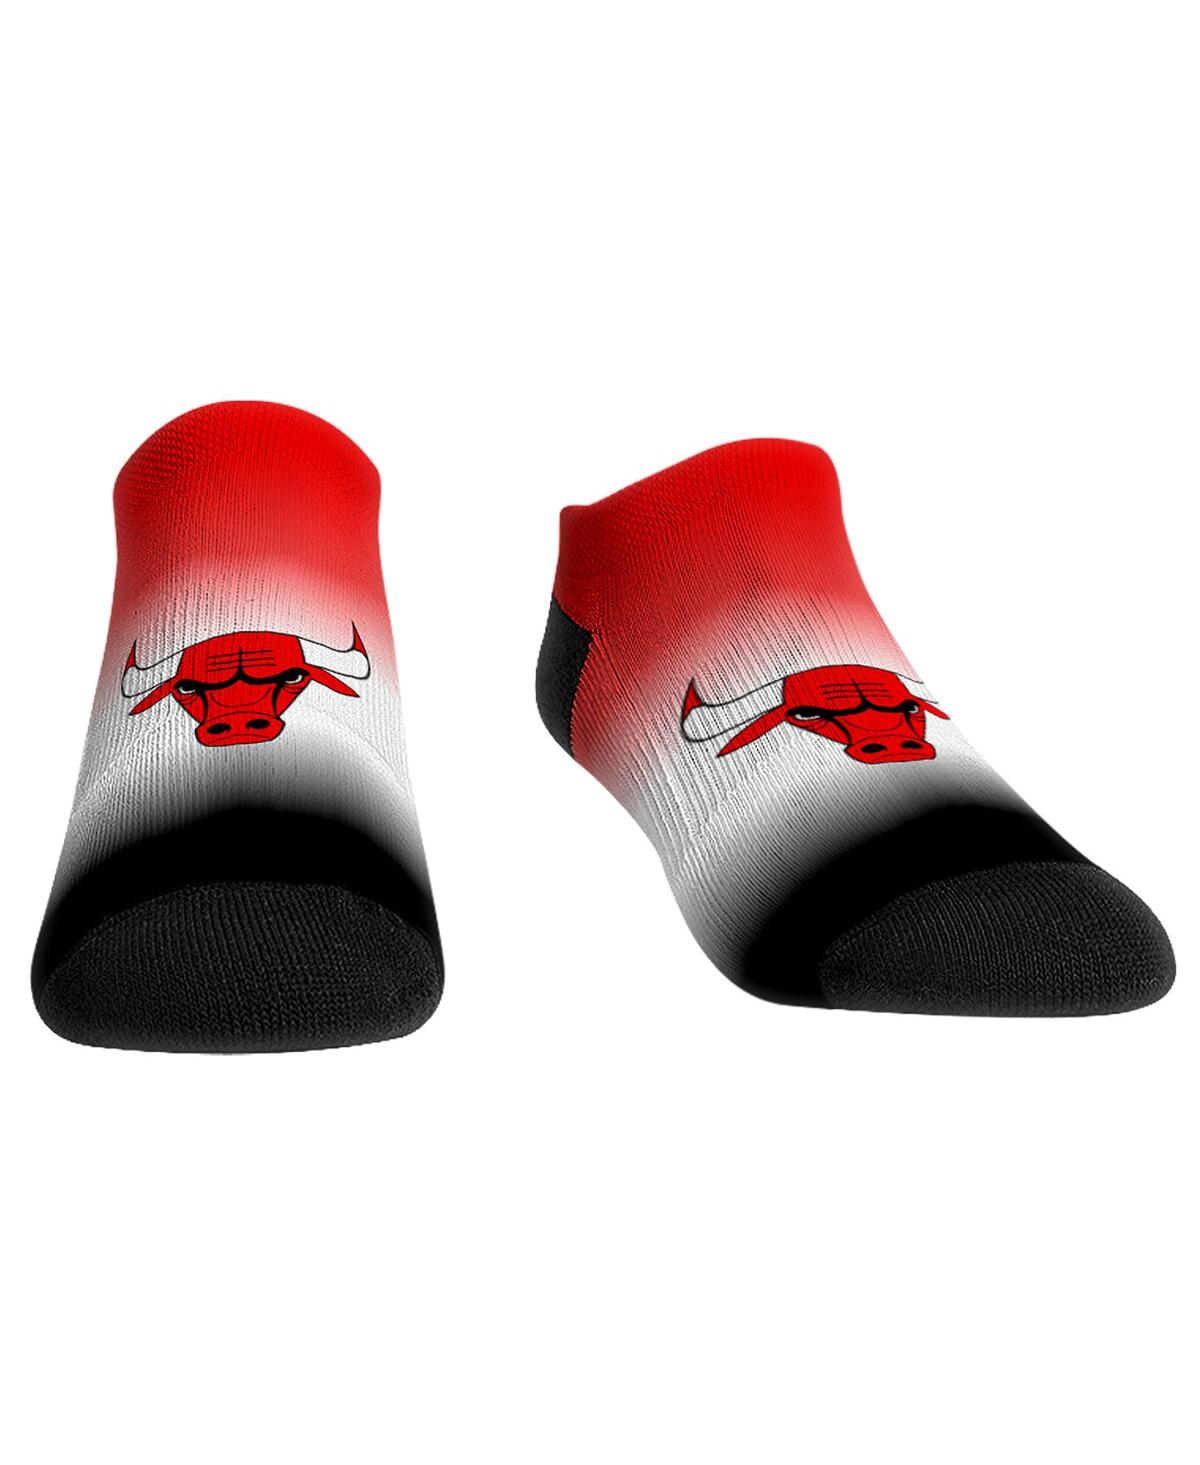 Women's Rock 'Em Socks Chicago Bulls Dip-Dye Ankle Socks - Multi